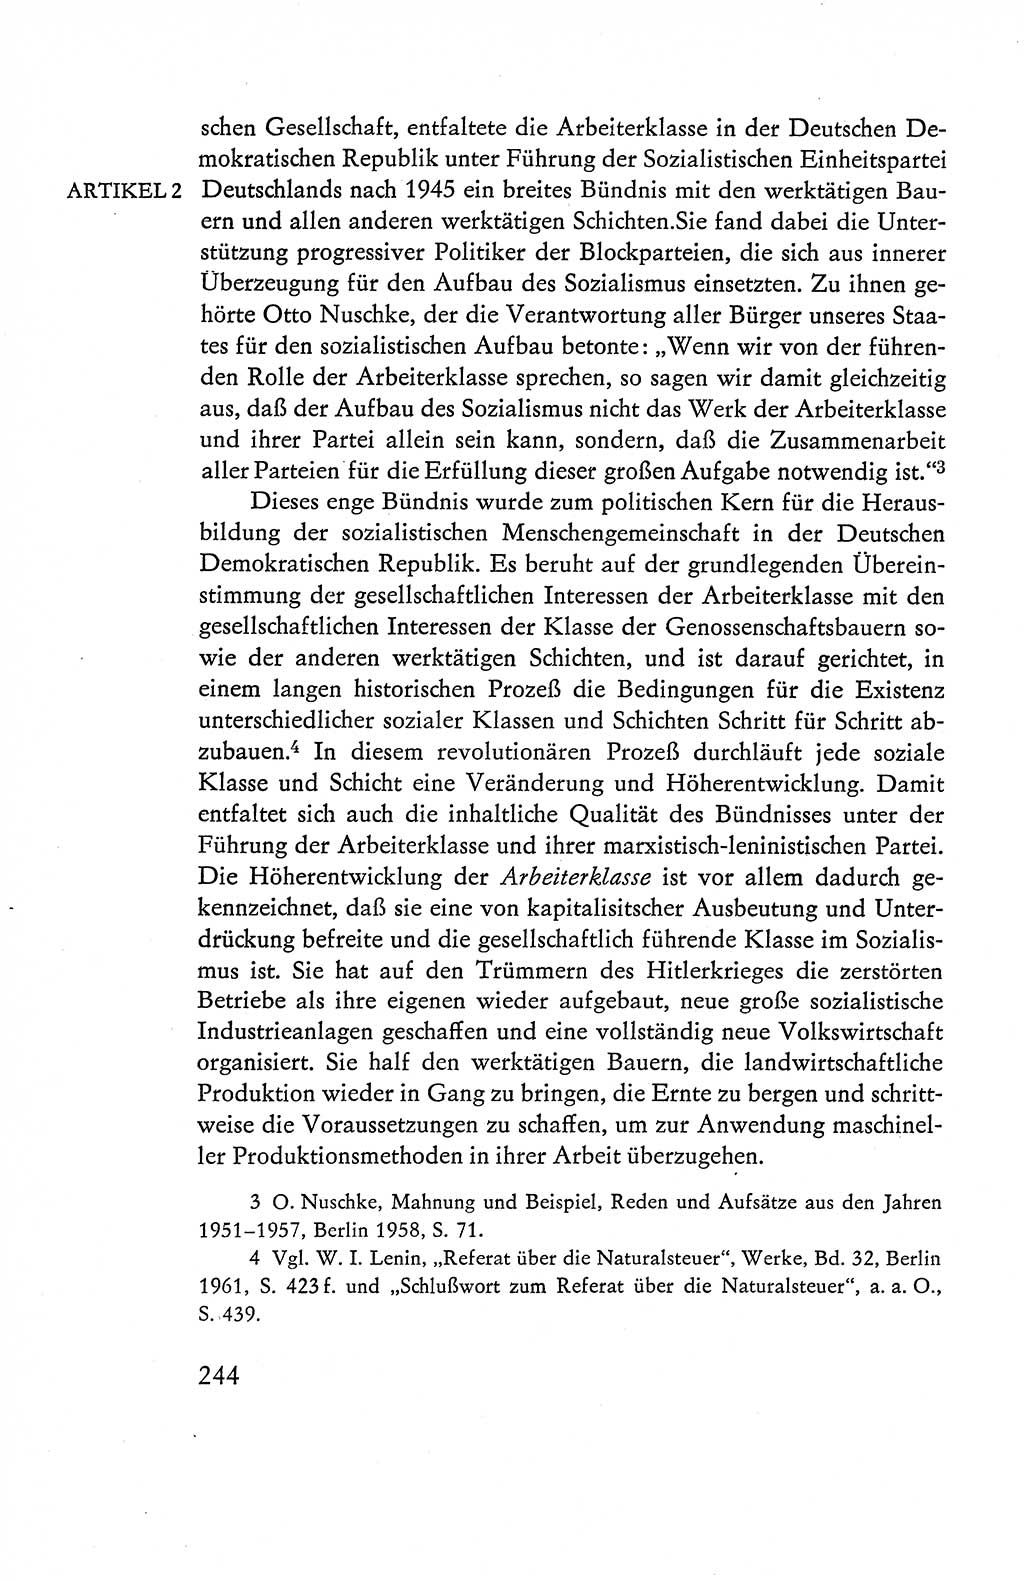 Verfassung der Deutschen Demokratischen Republik (DDR), Dokumente, Kommentar 1969, Band 1, Seite 244 (Verf. DDR Dok. Komm. 1969, Bd. 1, S. 244)